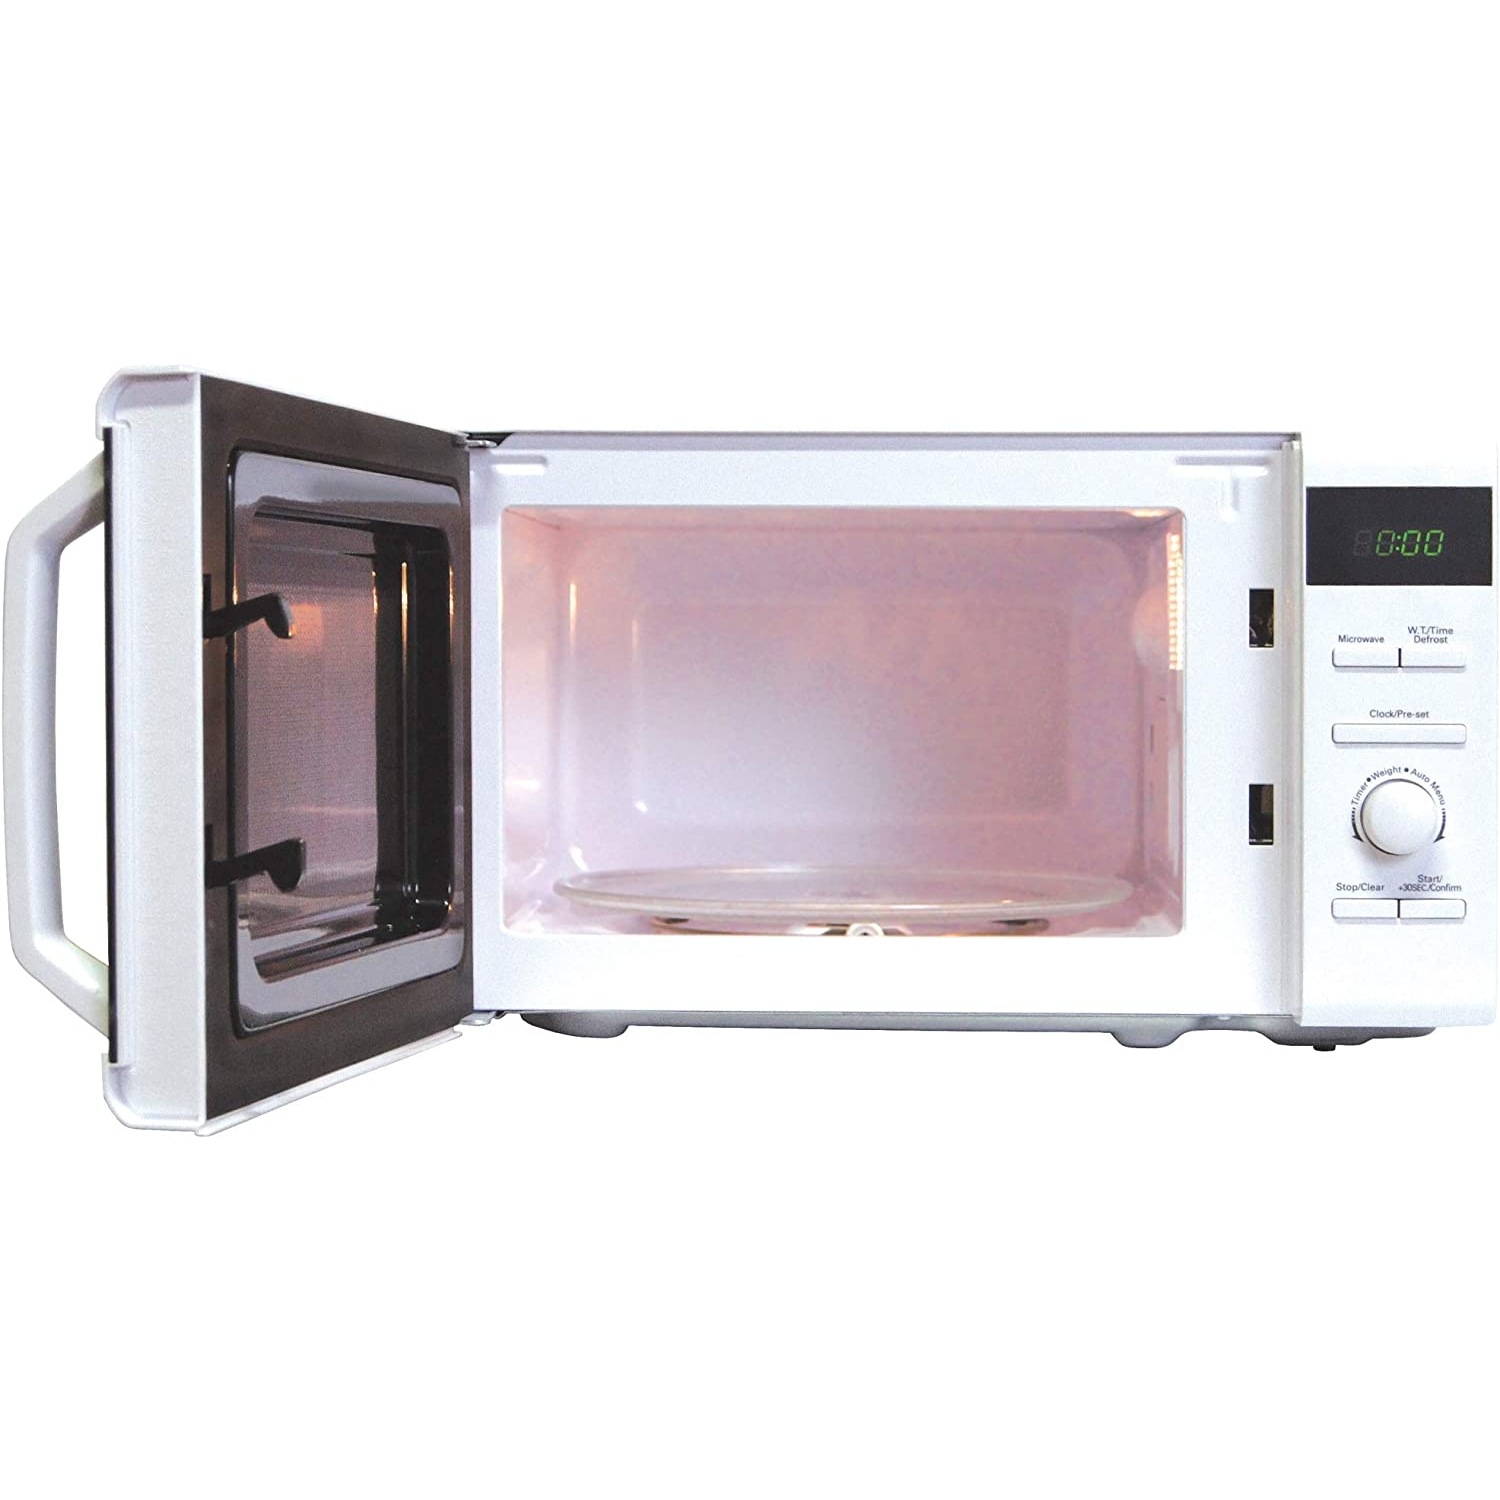 Igenix 20L white microwave - 1